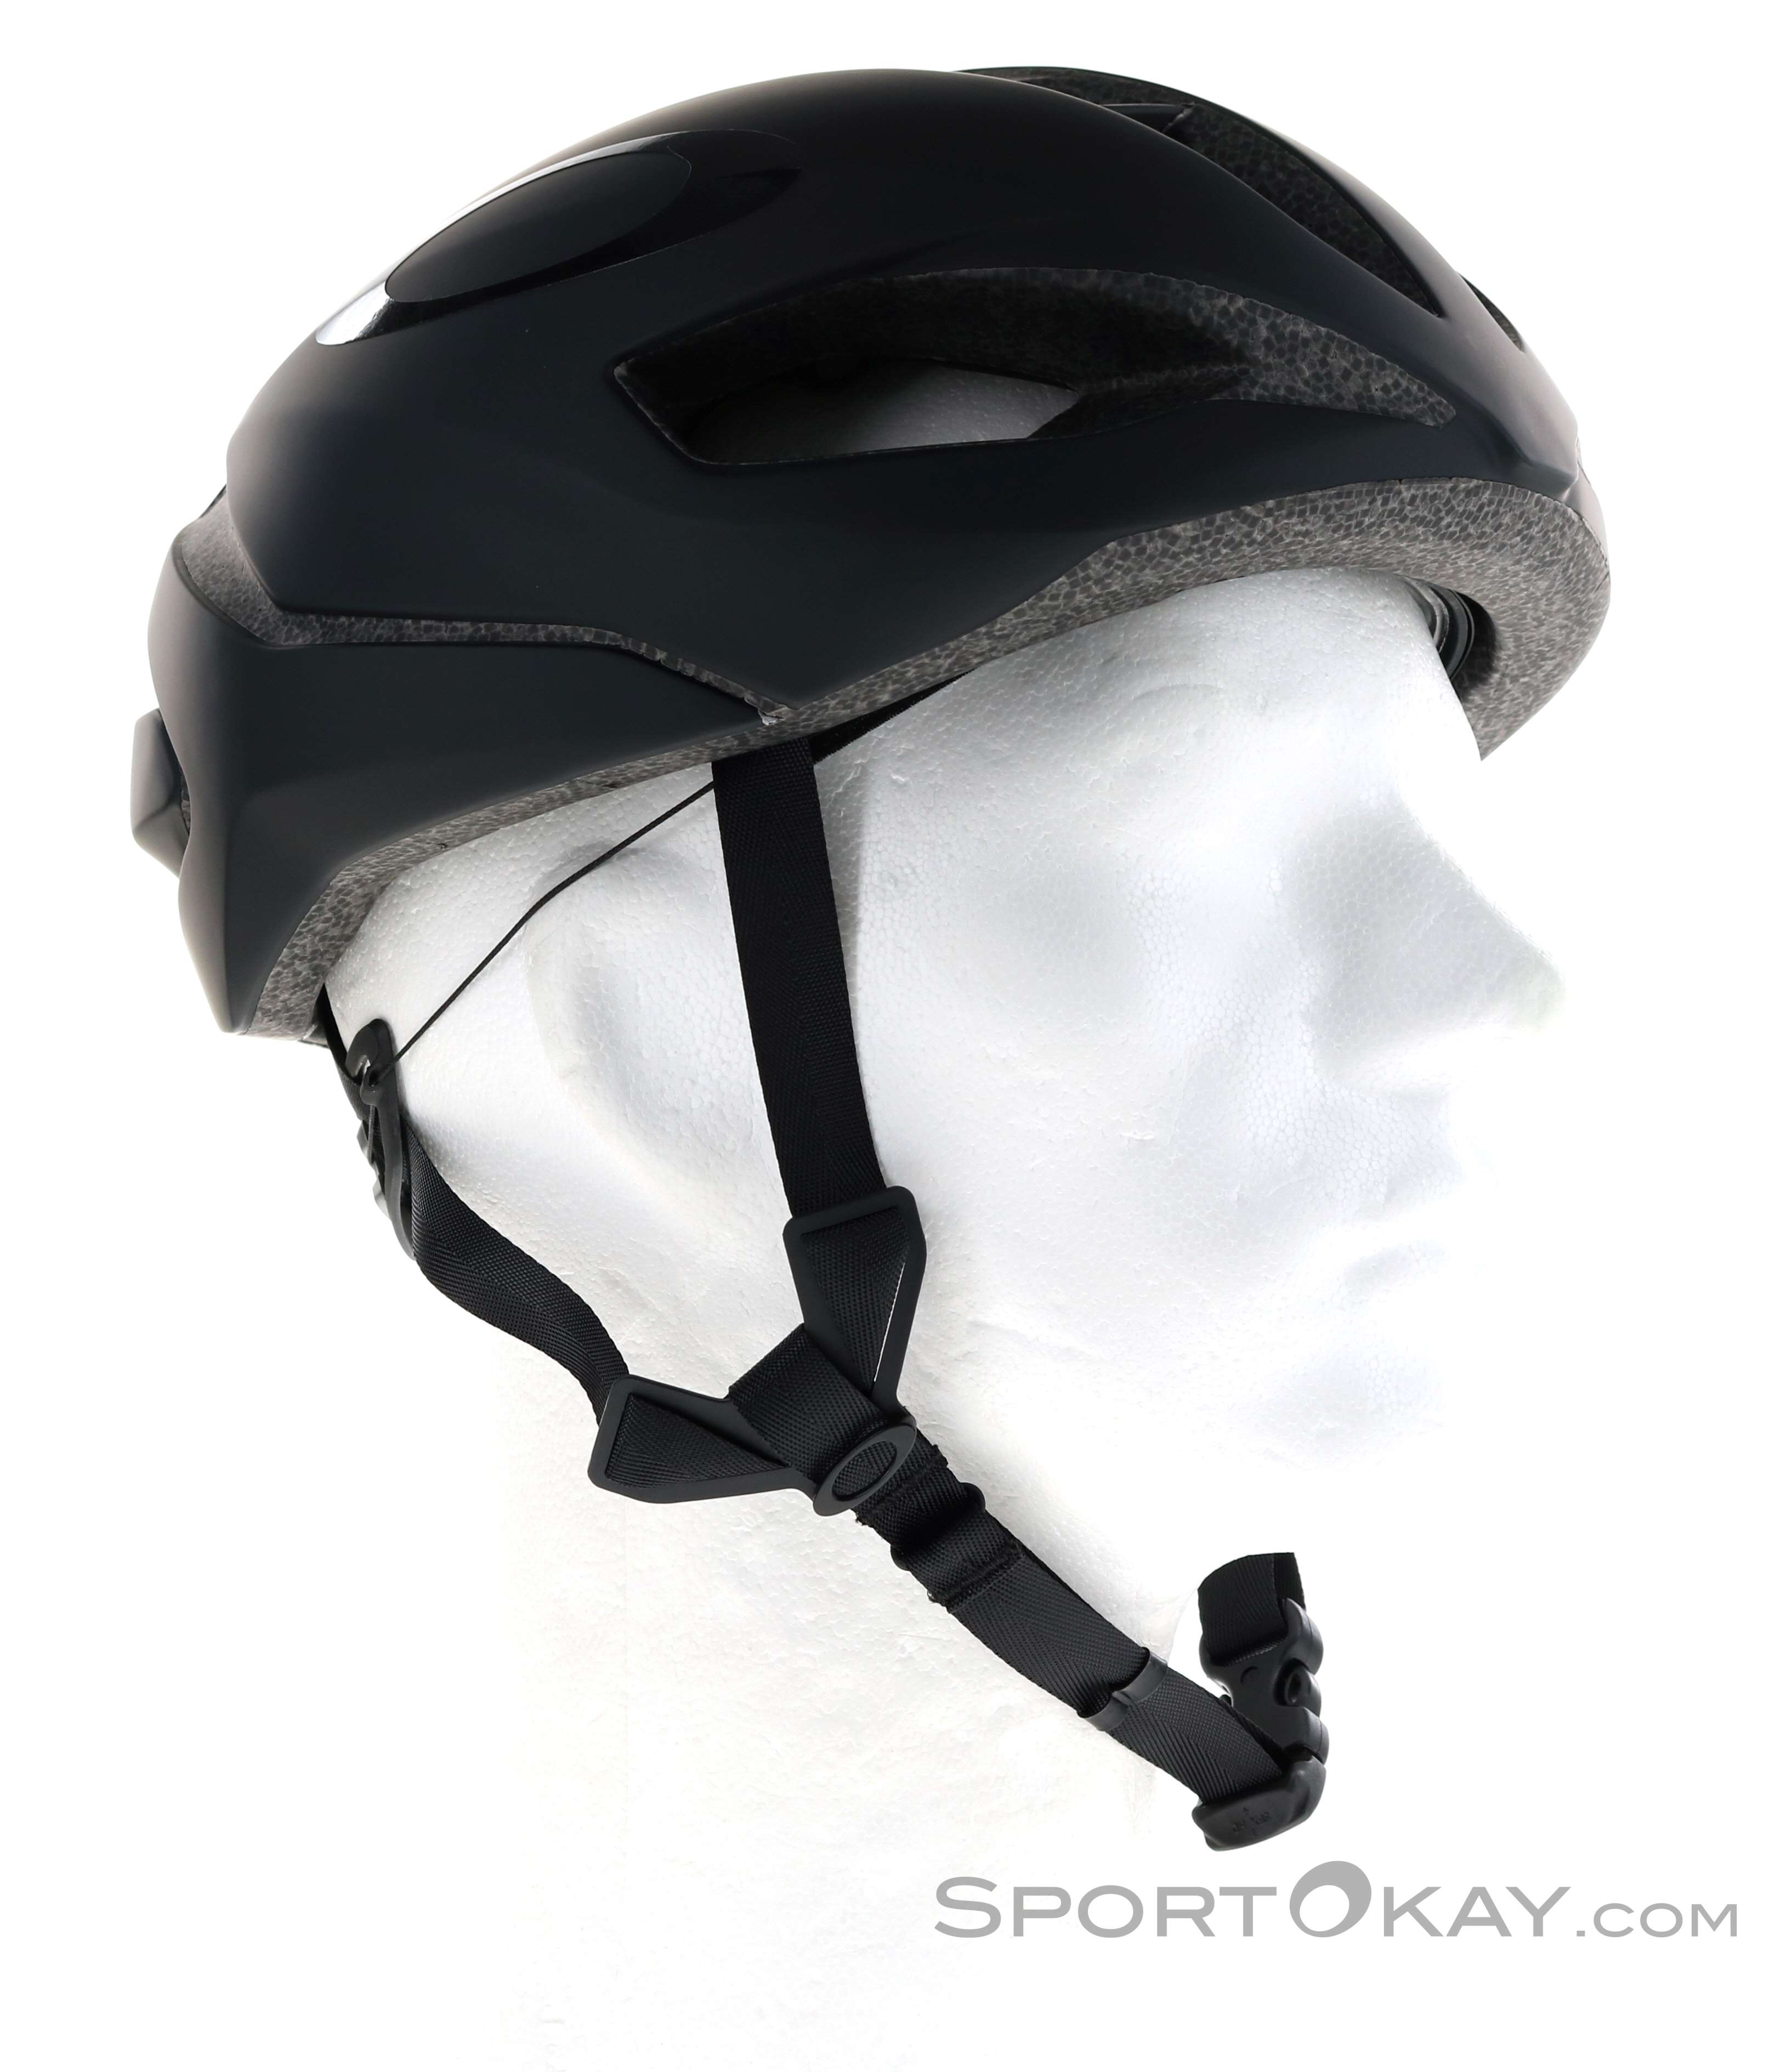 Oakley Aro 5 MIPS Road Cycling Helmet - Road Bike - Helmets - Bike - All